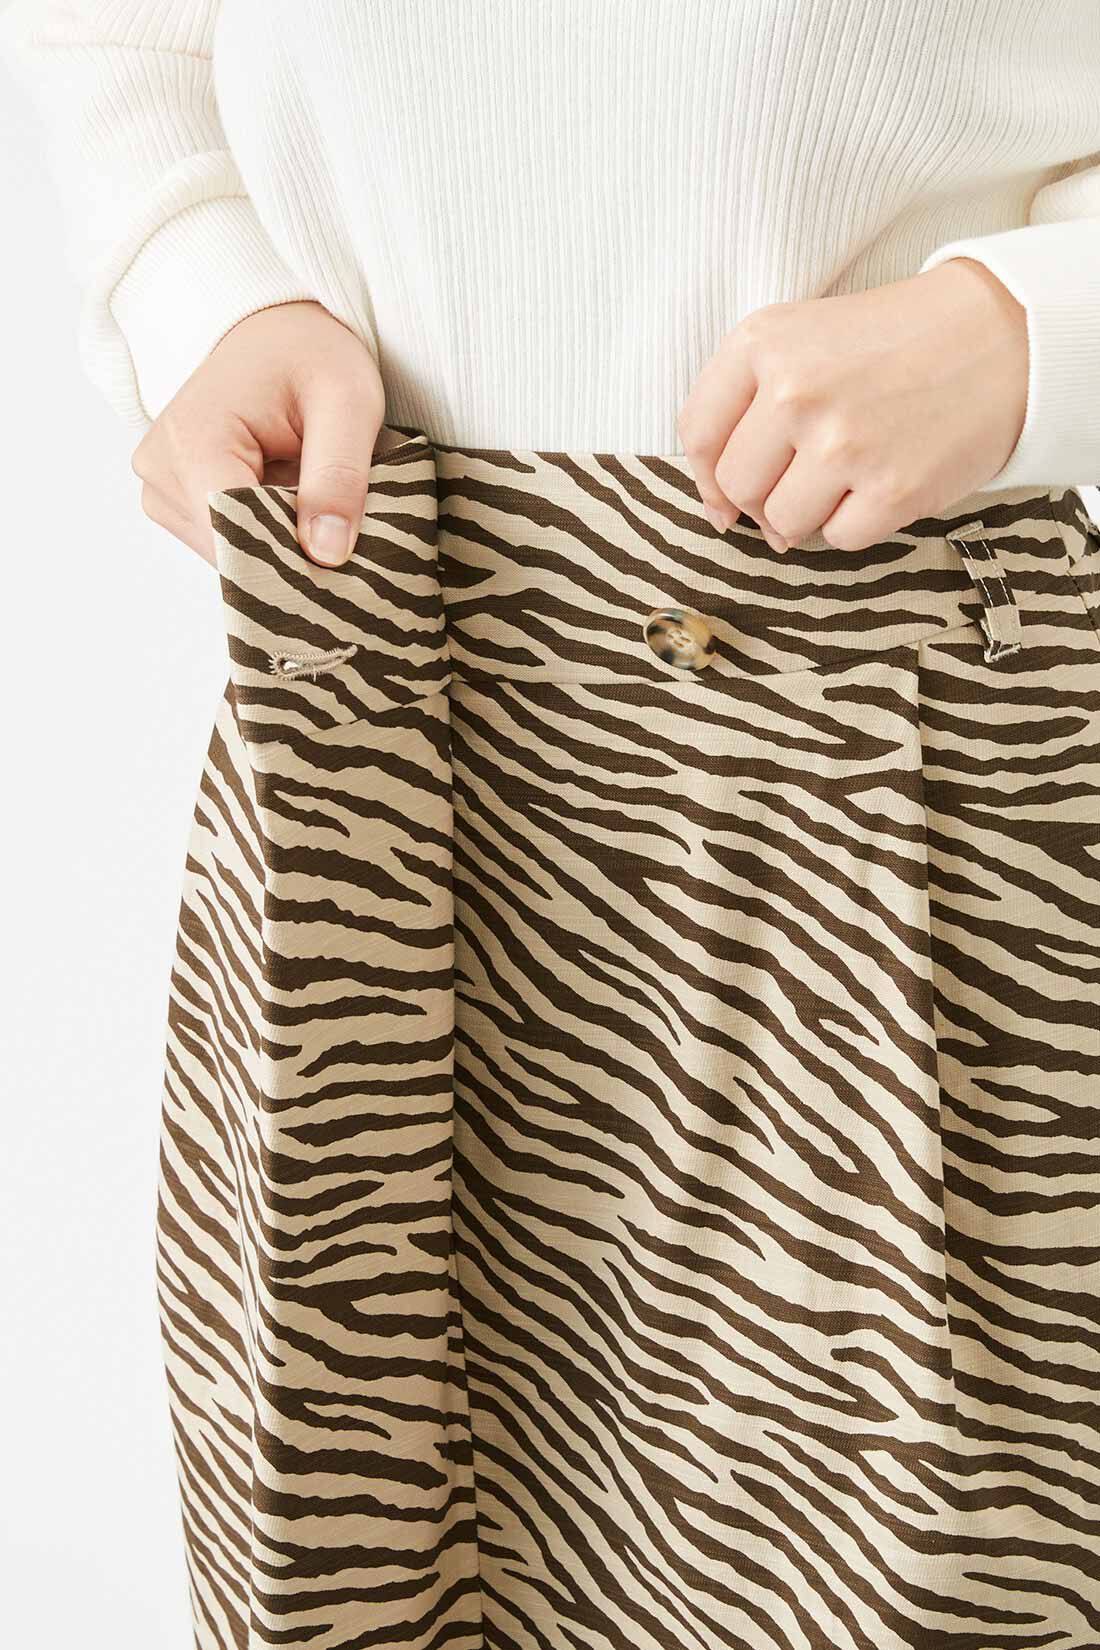 Real Stock|IEDIT[イディット]　新鮮柄を楽しむ ラップ風デザインのIラインスカート〈ベージュ〉|布を折り返したラップ風デザインだから、はだける心配ナシ。ウエスト共布リボンは取り外し可能。